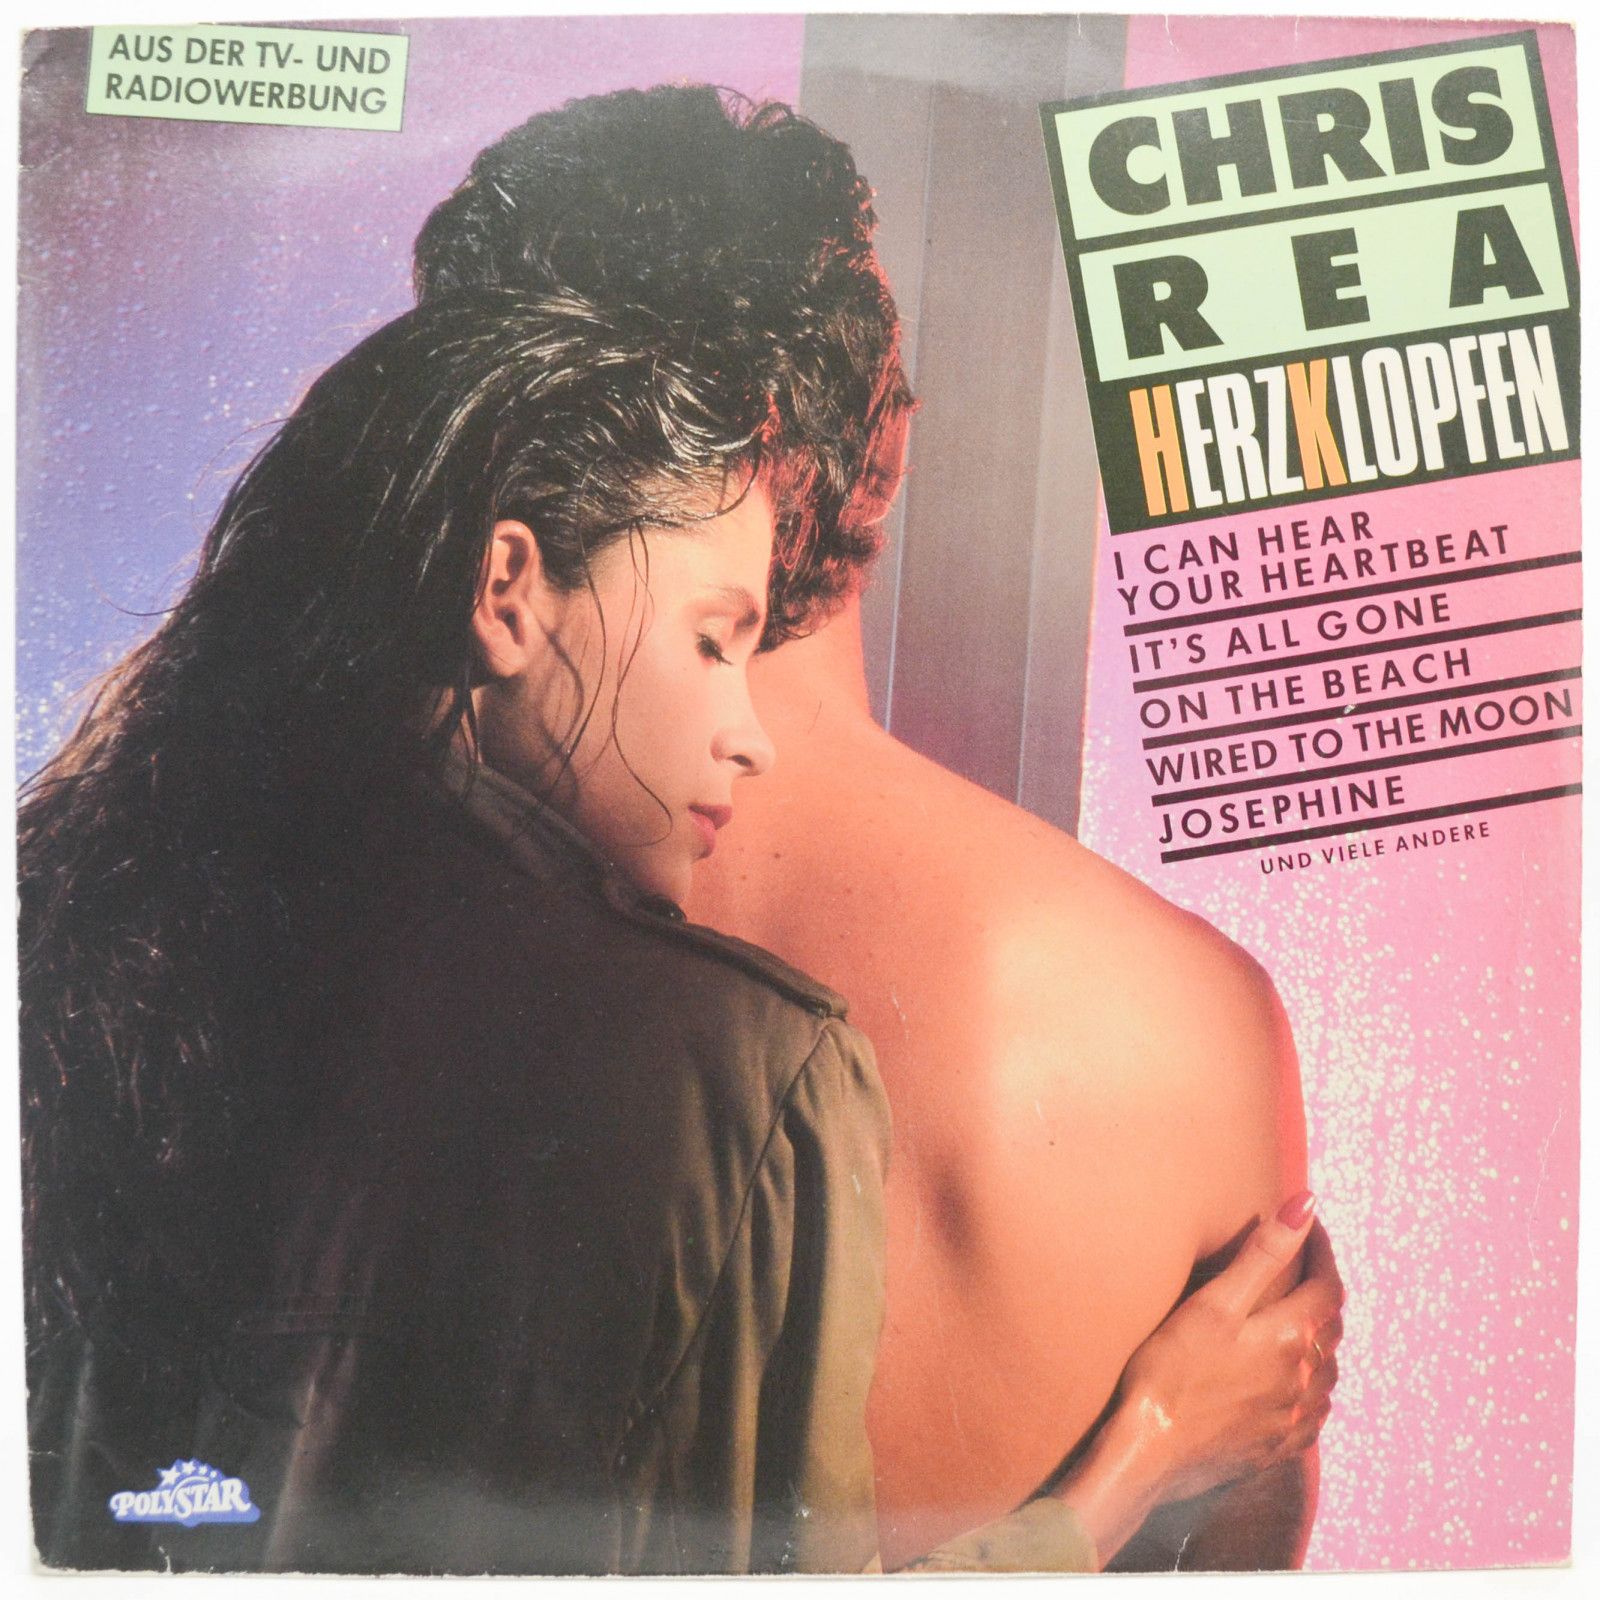 Chris Rea — Herzklopfen, 1986